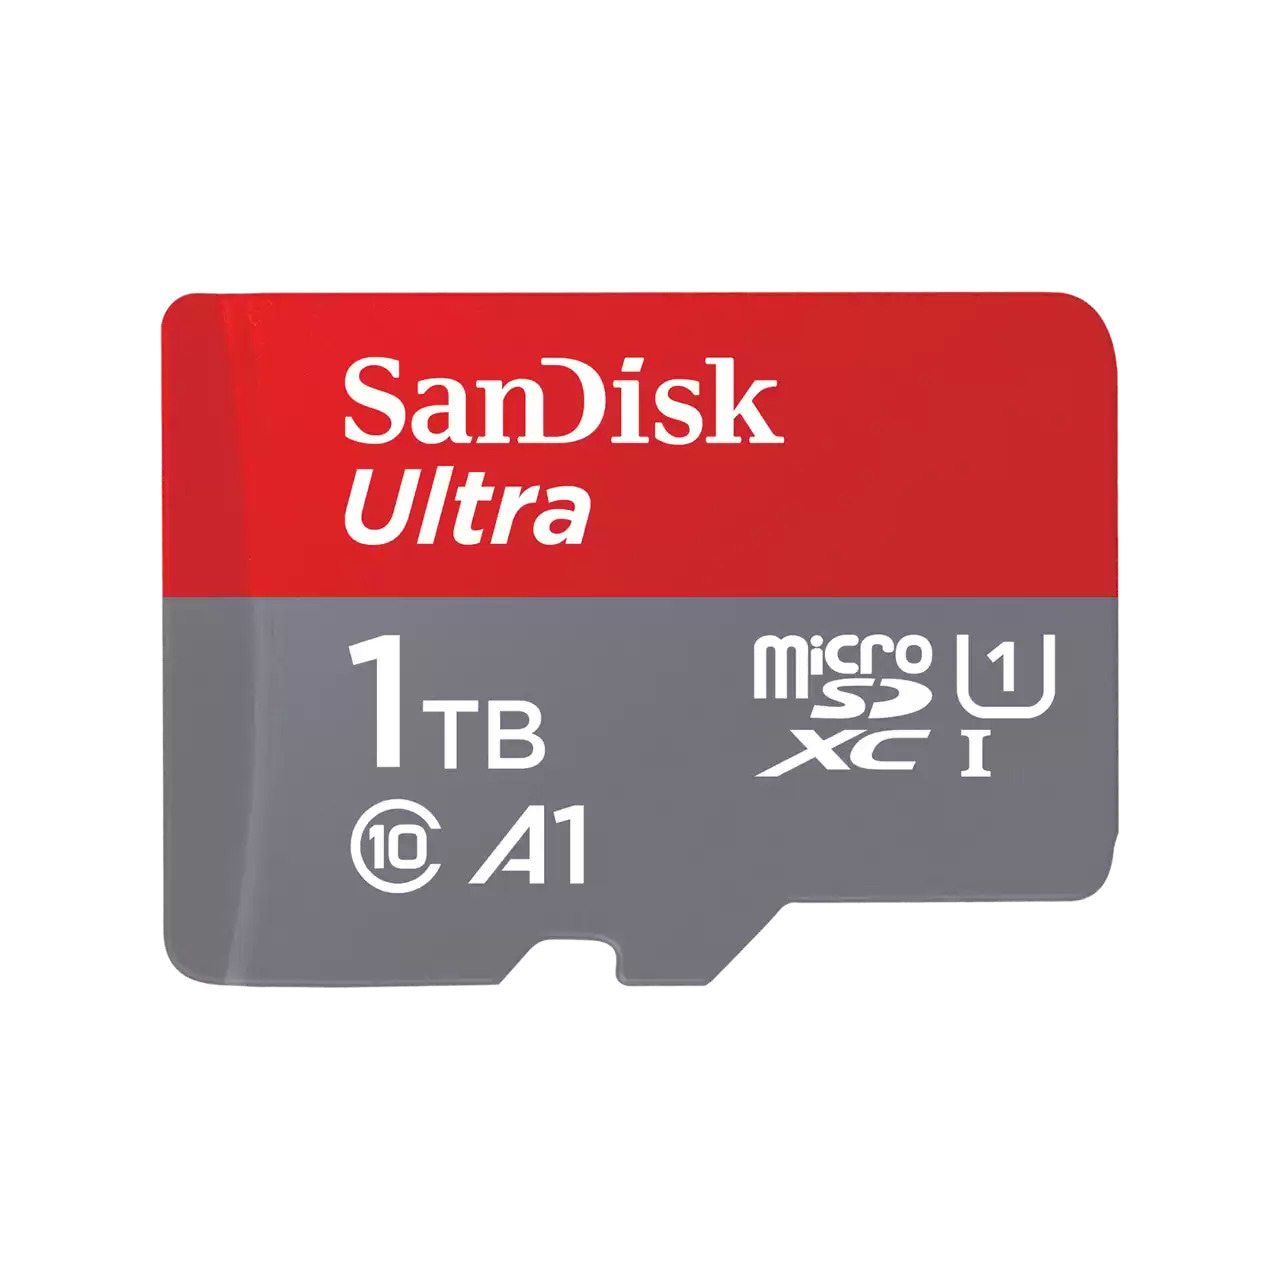 כרטיס זיכרון SanDisk Ultra UHS I 1TB MicroSD Card 150MB/s - חמש שנות אחריות ע